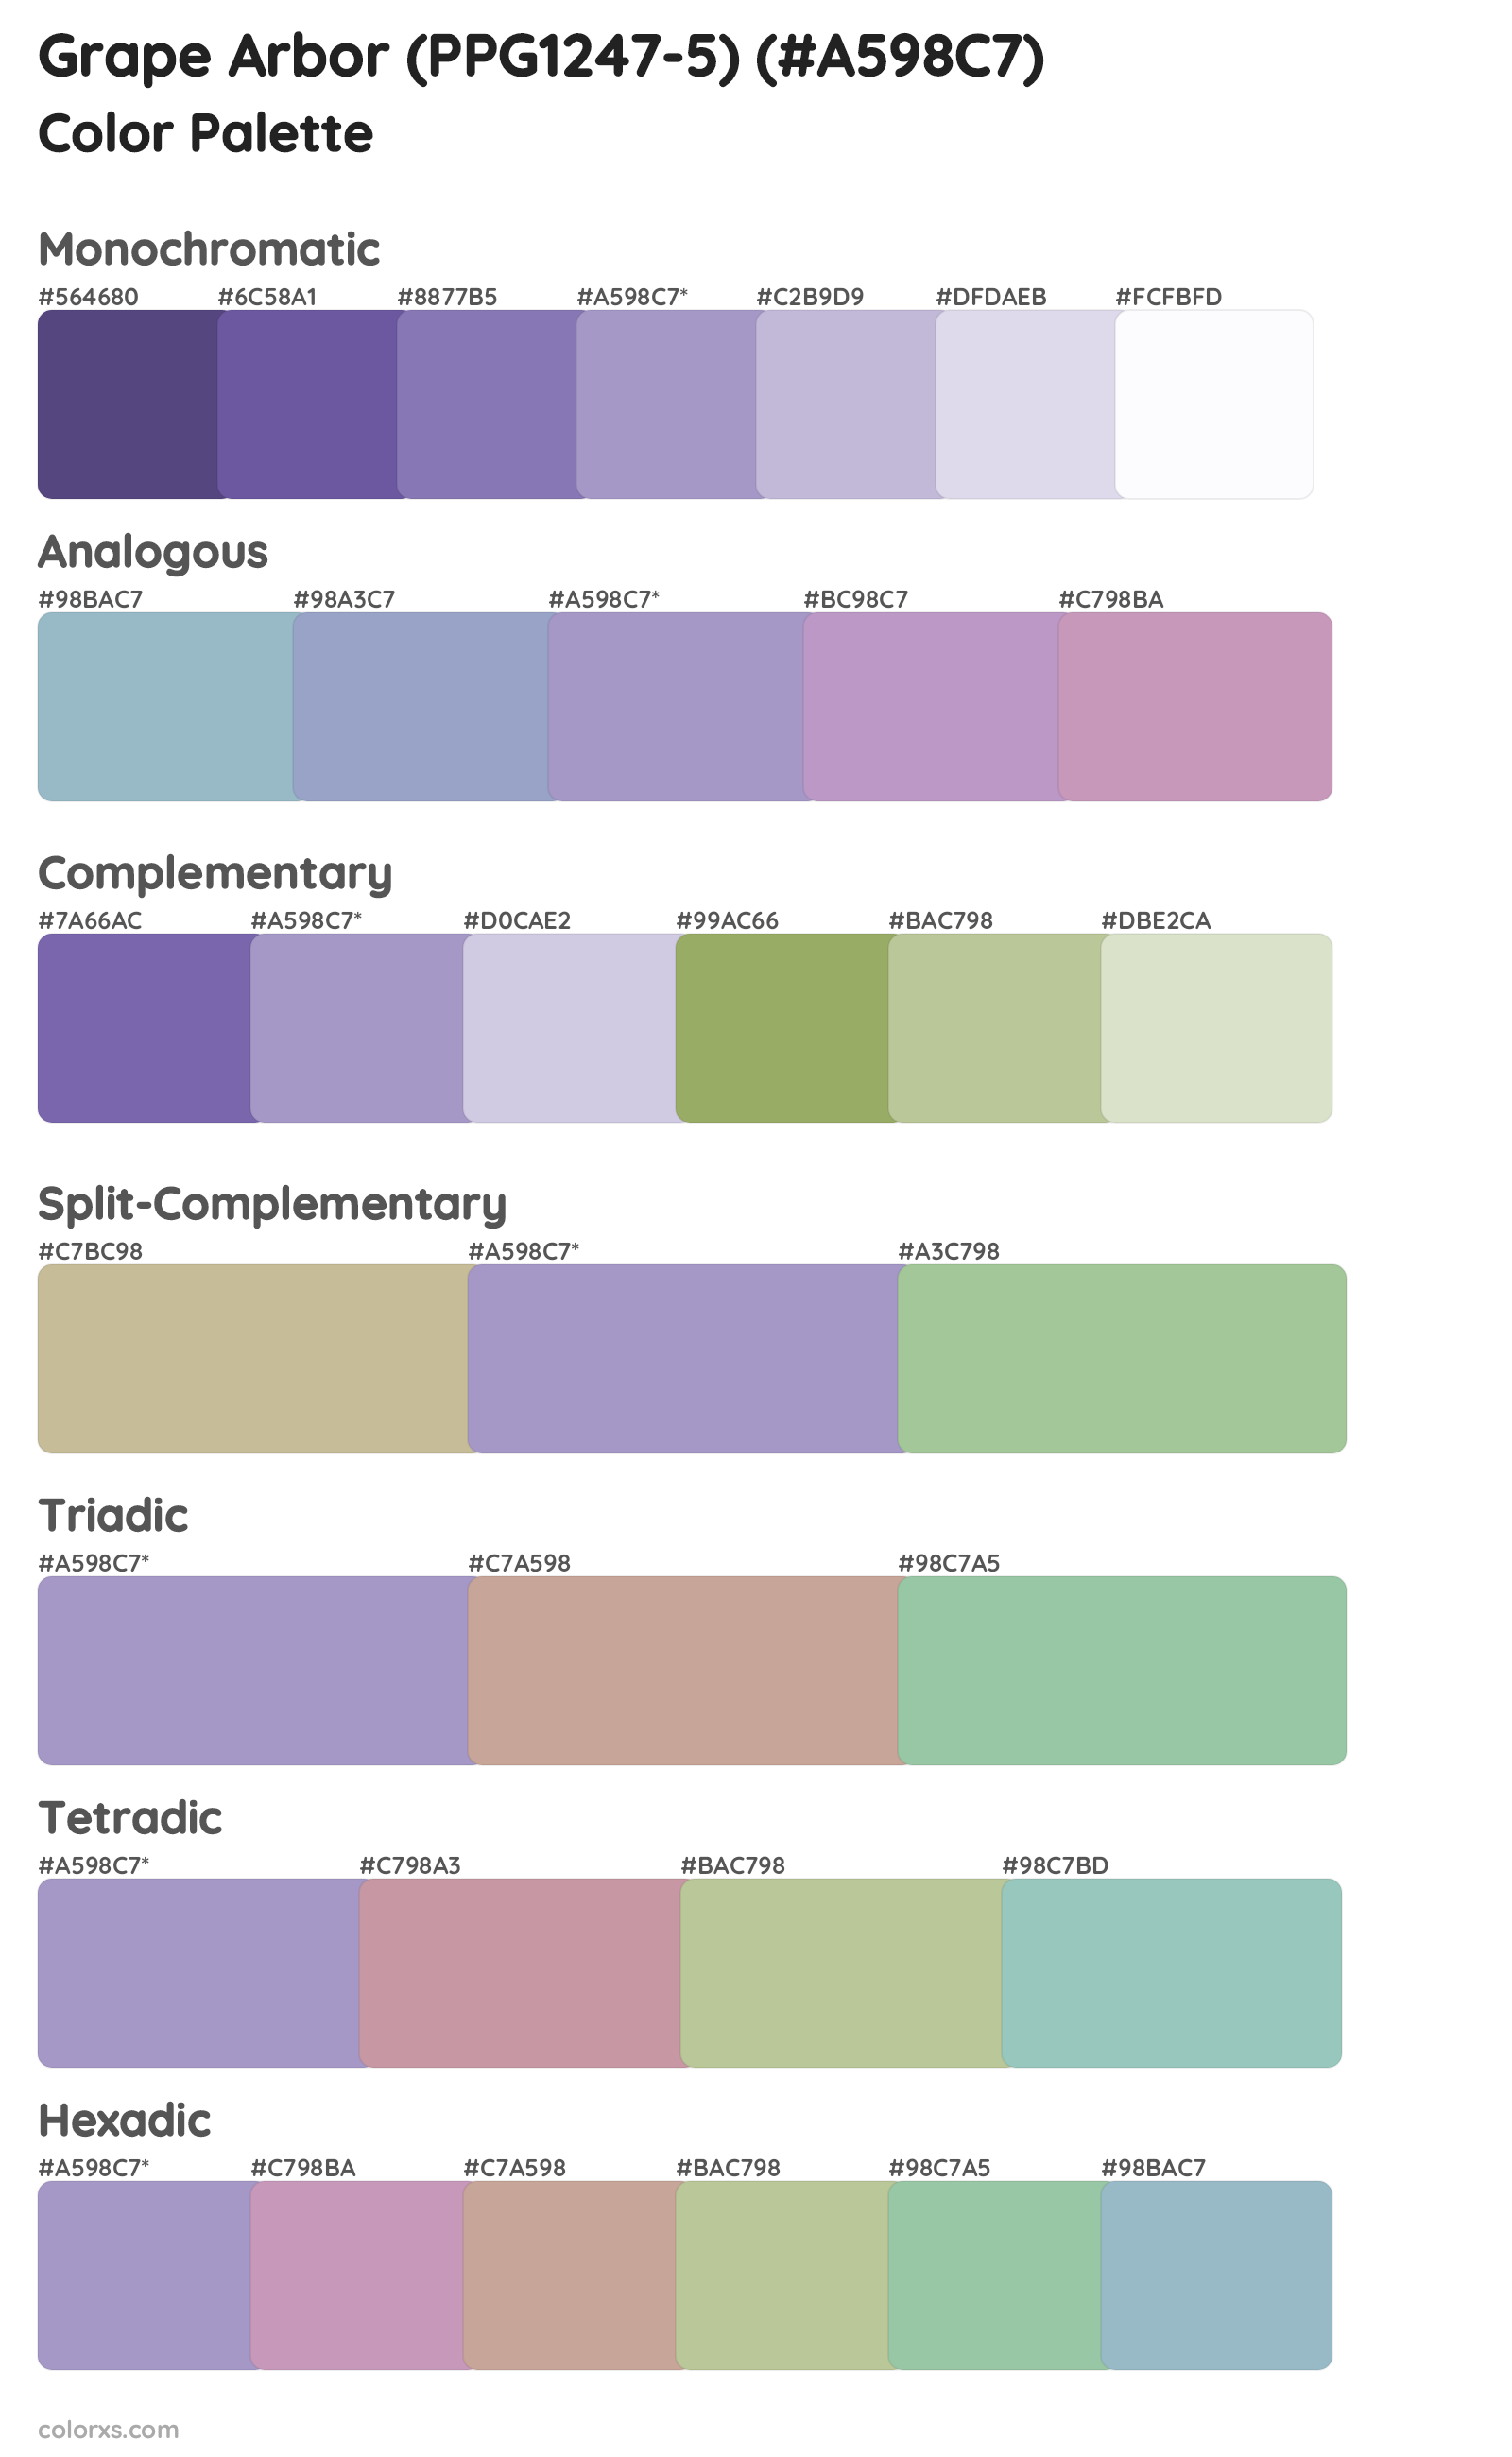 Grape Arbor (PPG1247-5) Color Scheme Palettes